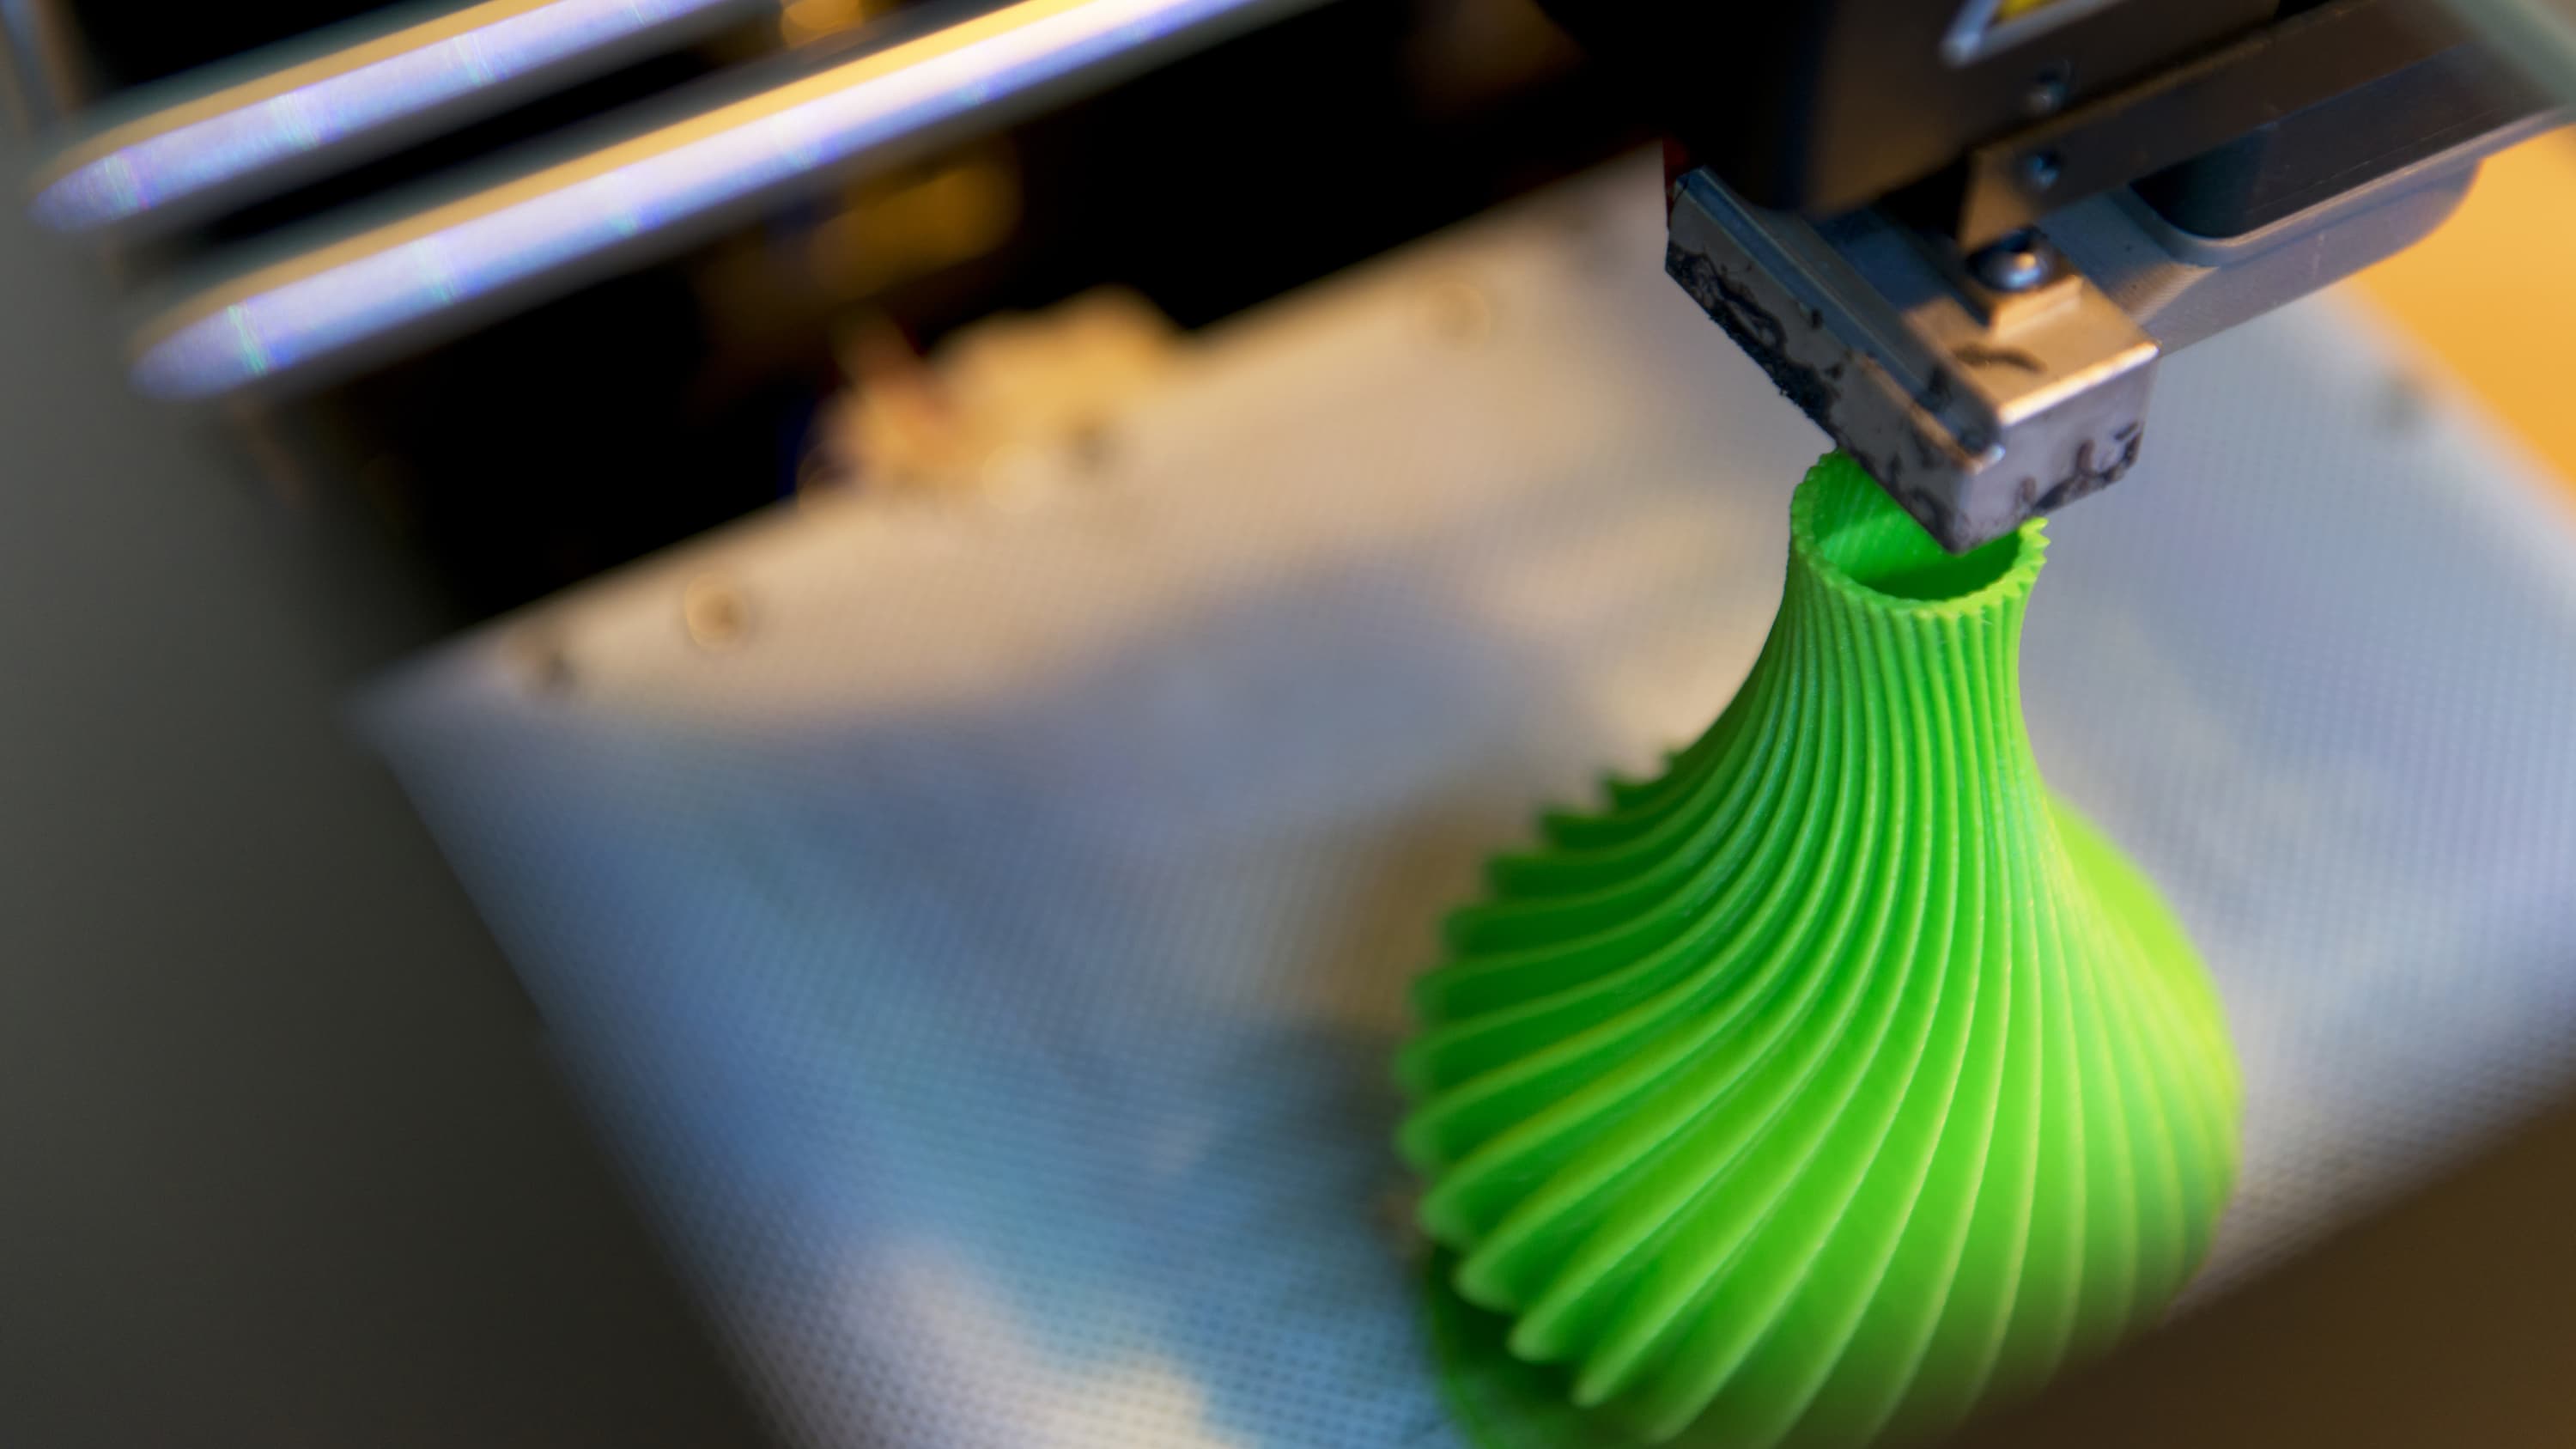 A 3D printer prints something green.